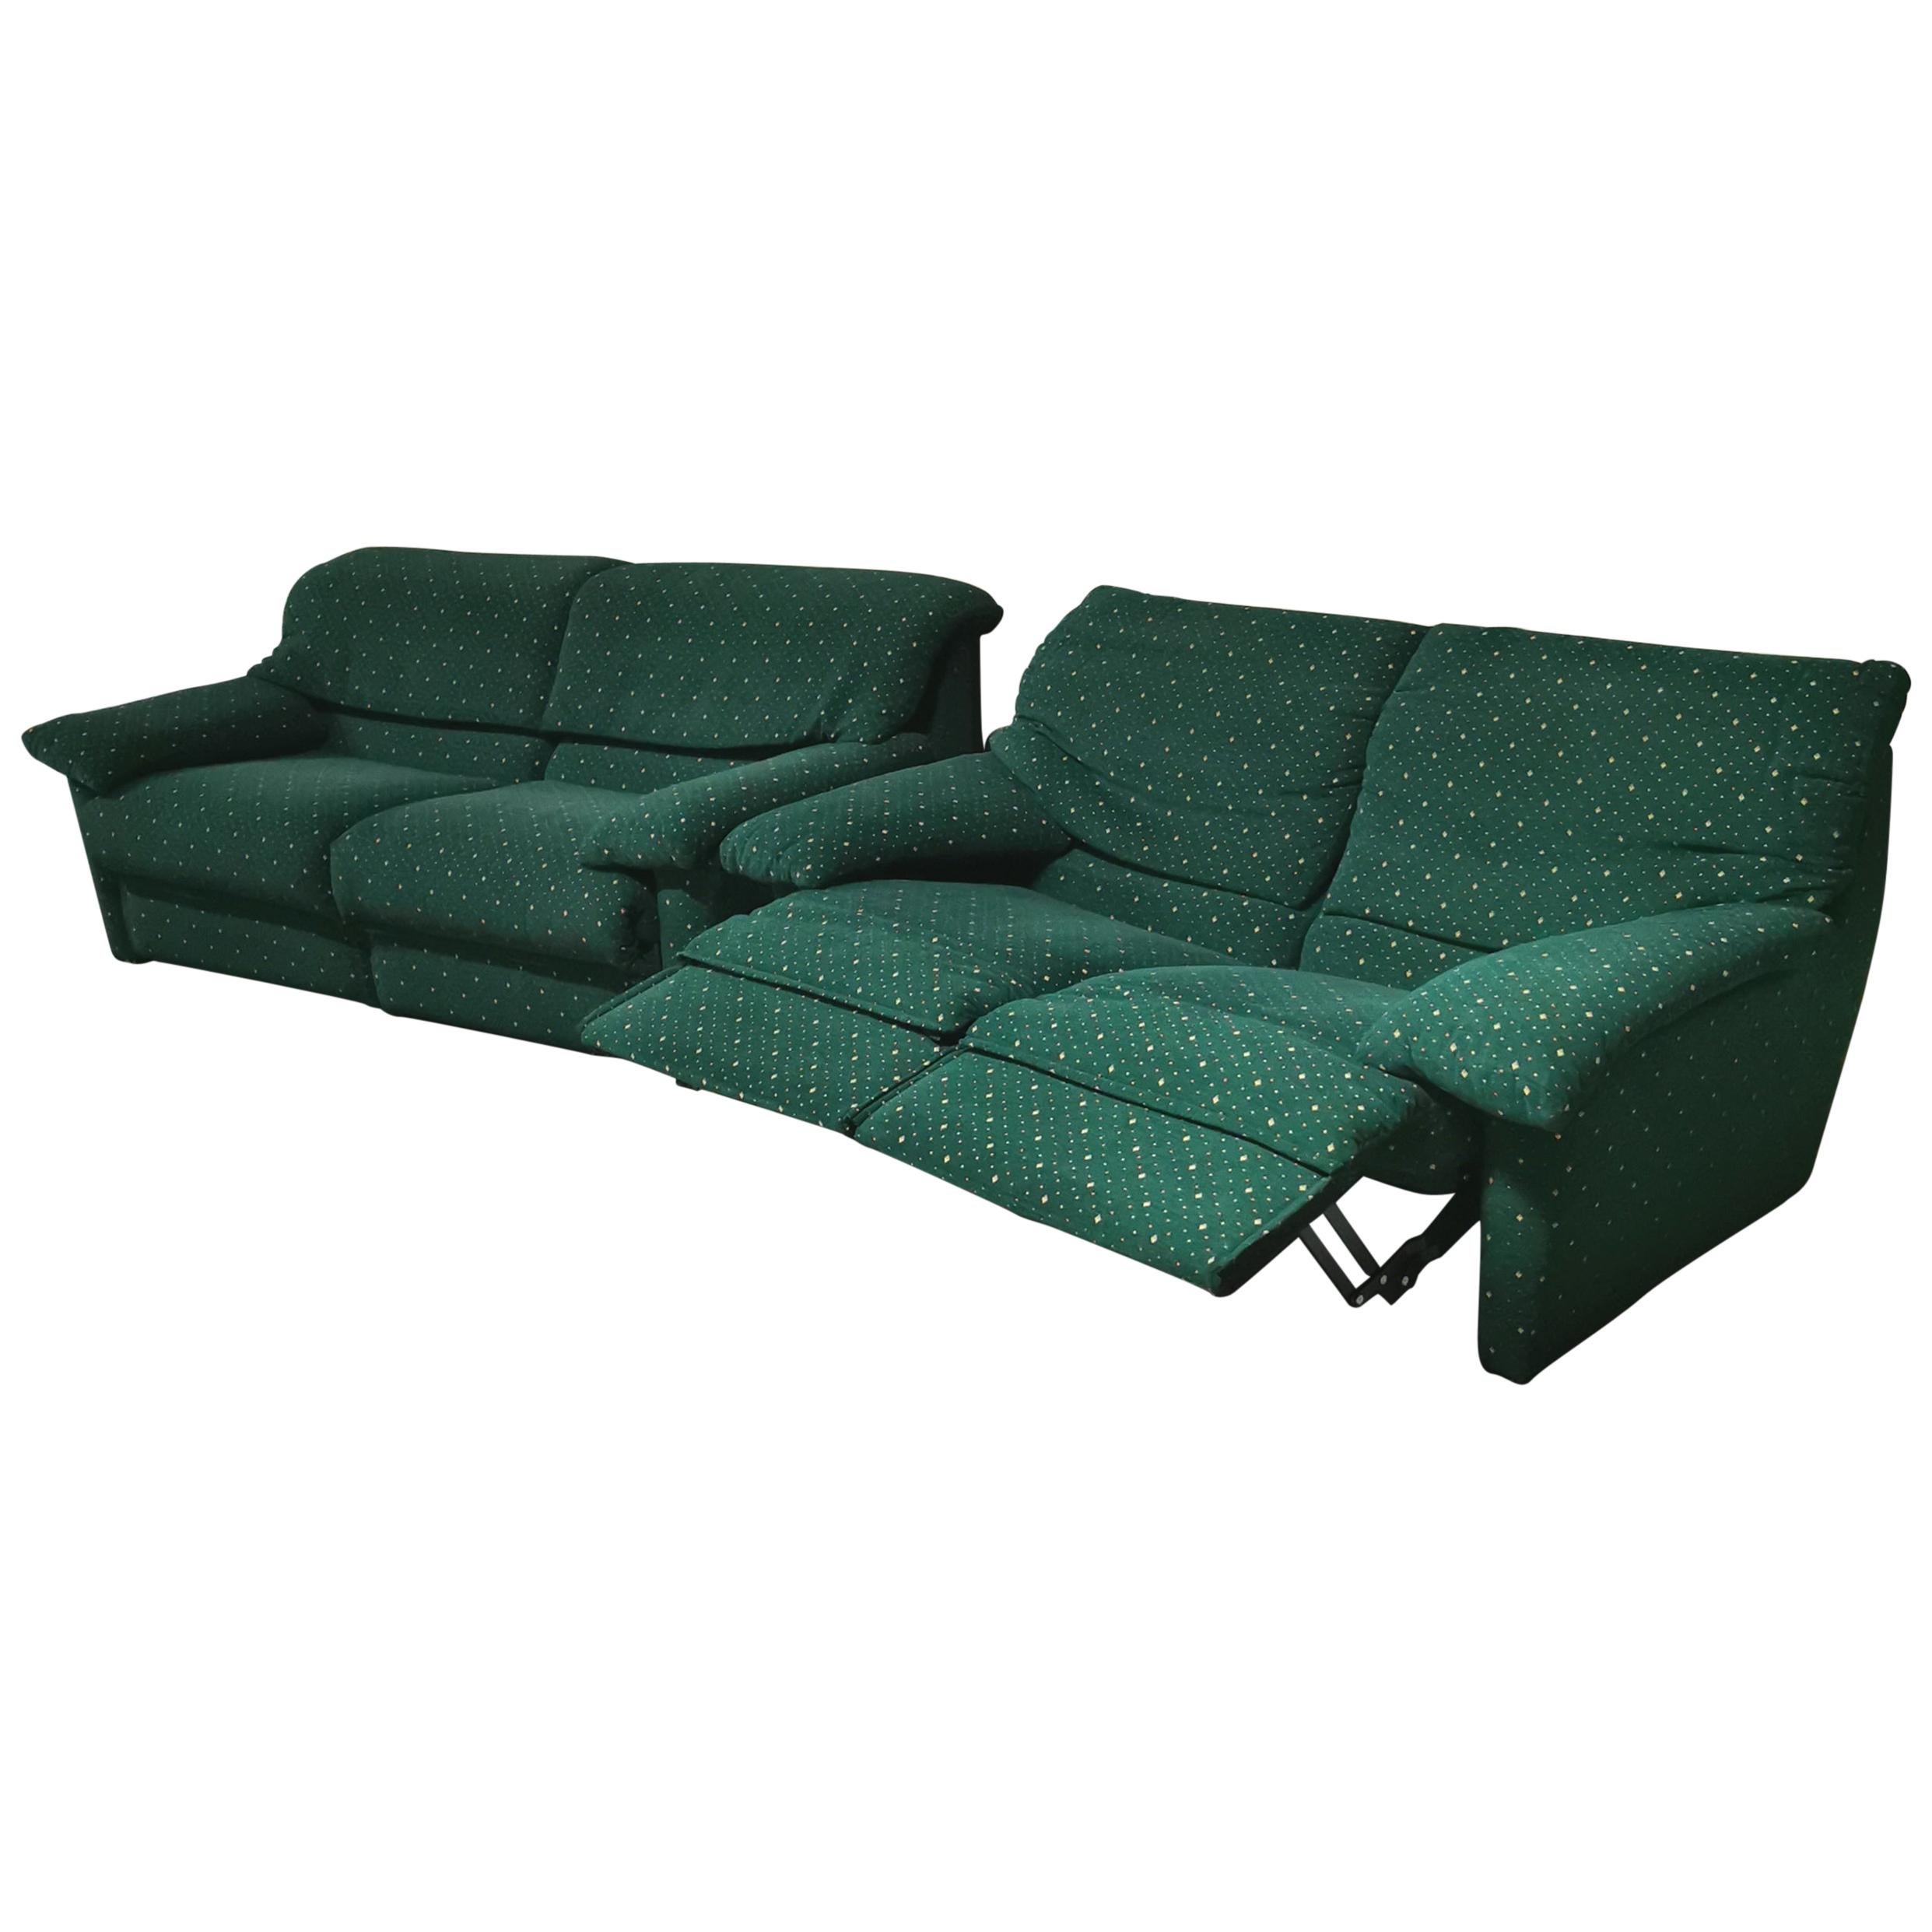 Sofas Living Room Green Velvet by Pol 74 Postmodern 2 3 Seat Italy 1990 Set of 2